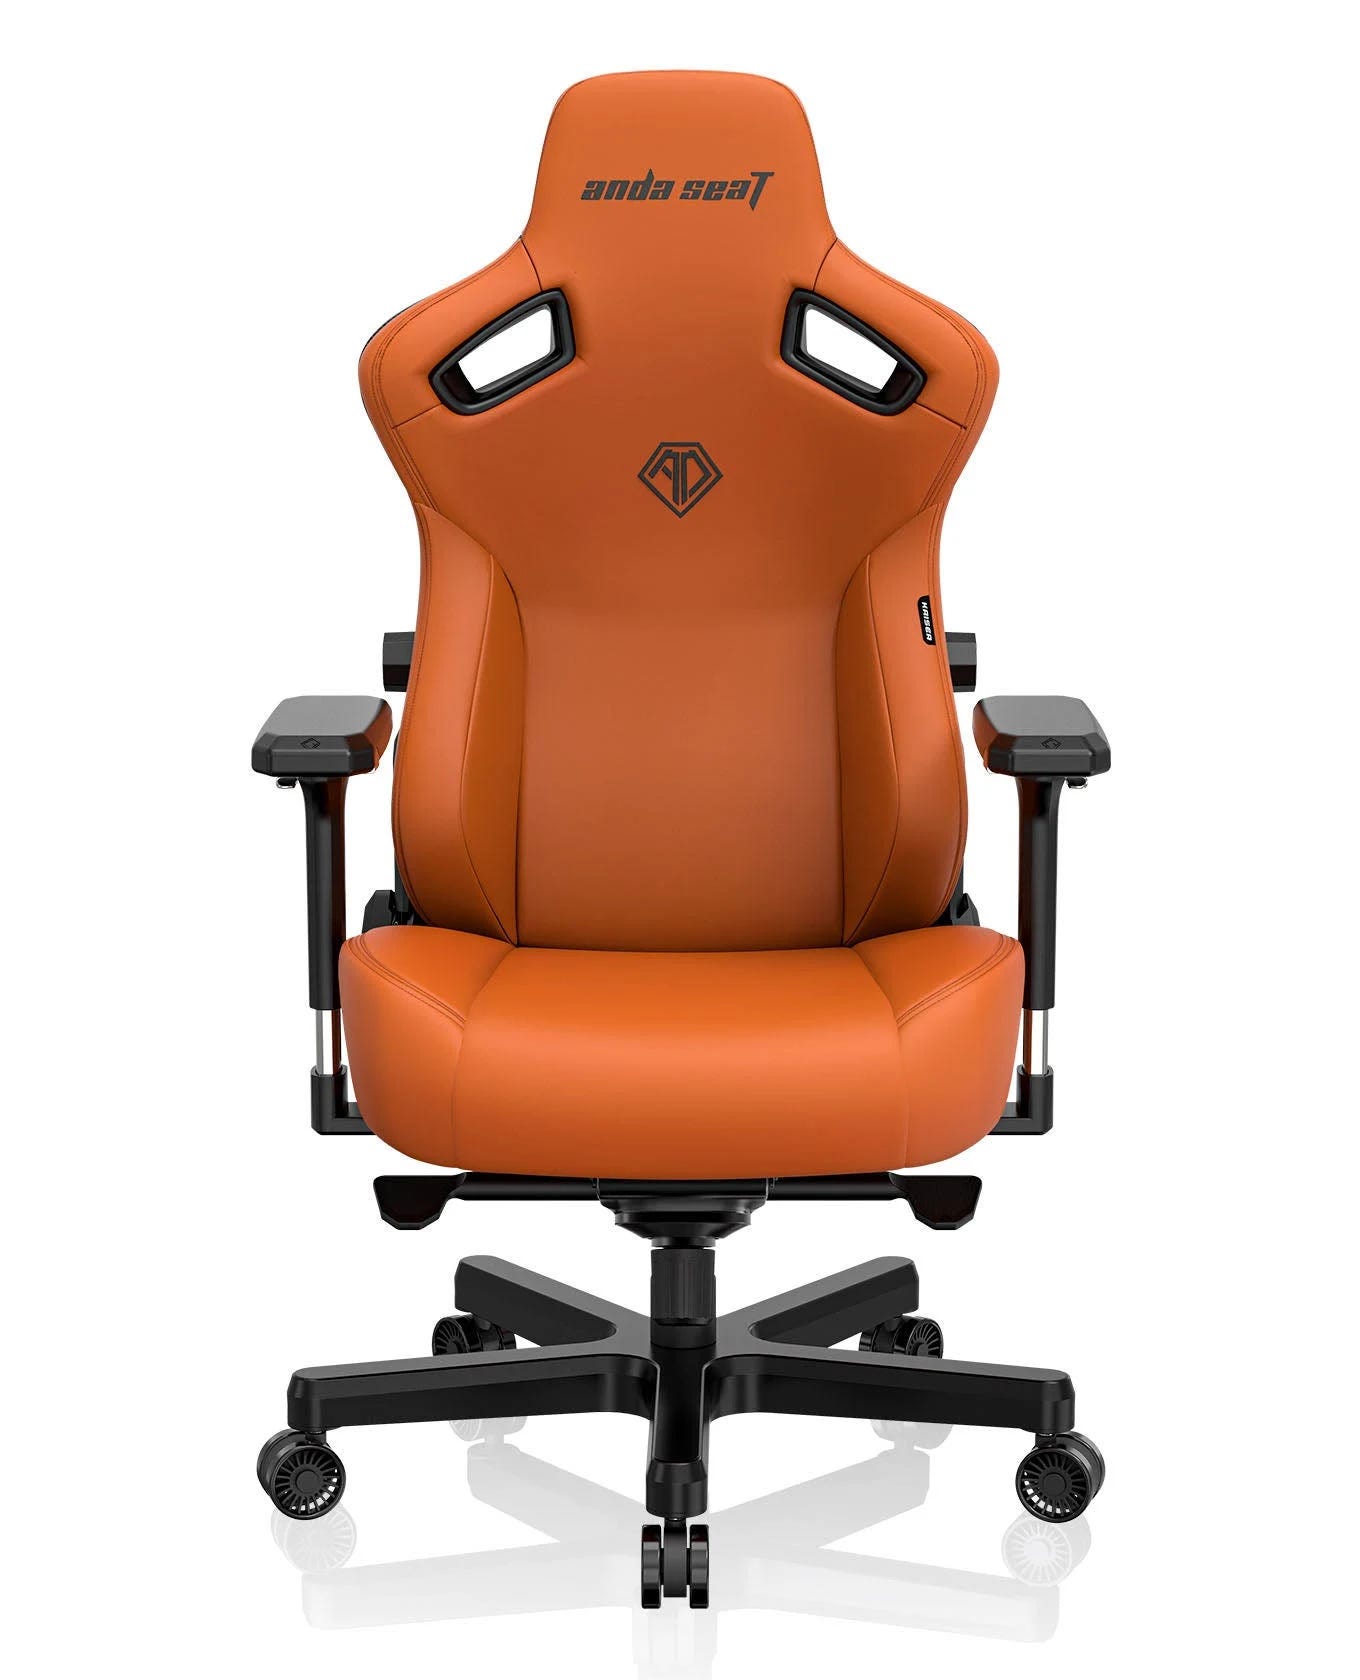 AndaSeat Kaiser 3 Ergonomic Gaming Chair in Blaze Orange | Image